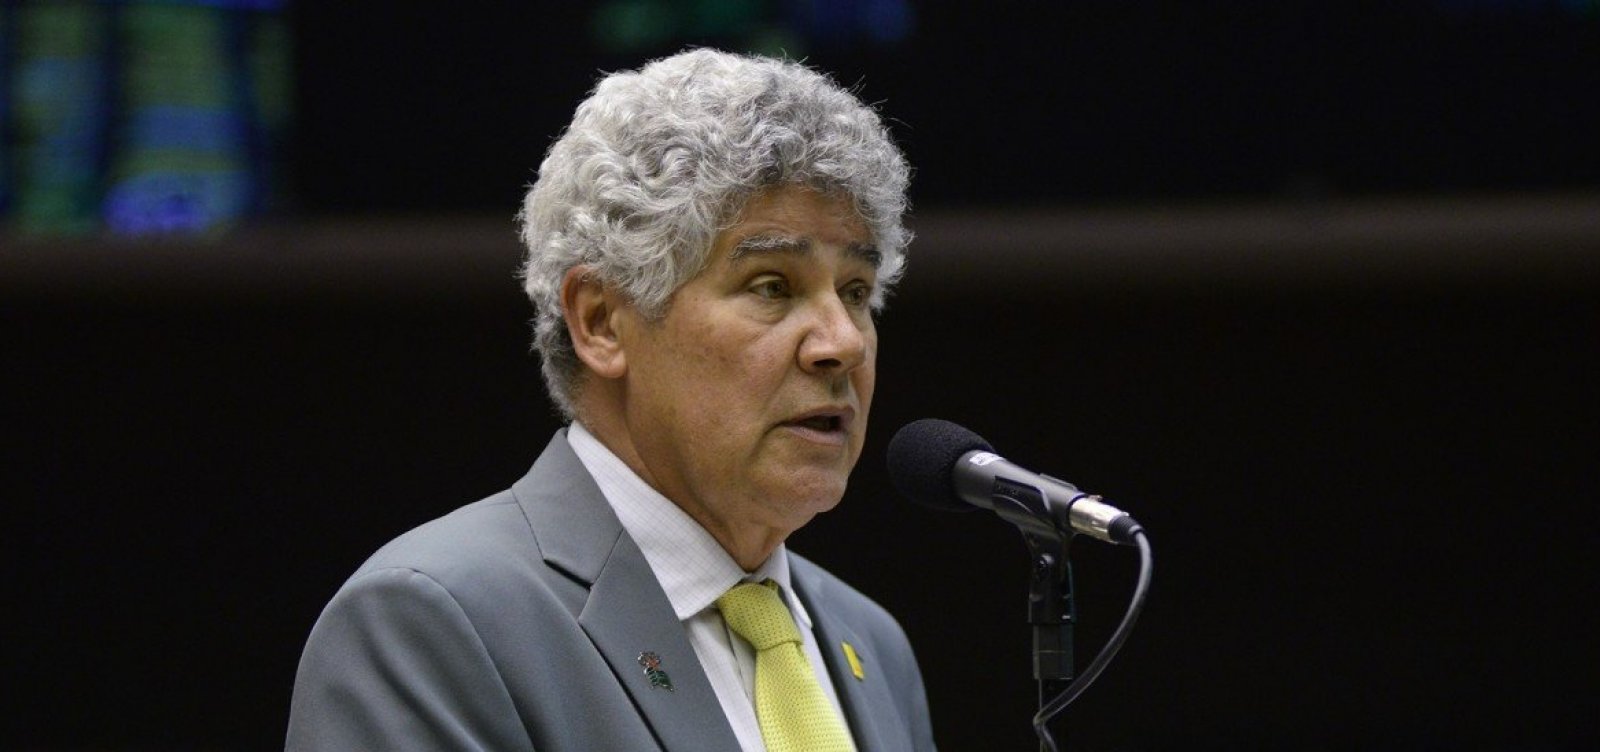 Chico Alencar avalia intervenção federal no Rio: 'Foi um fiasco'